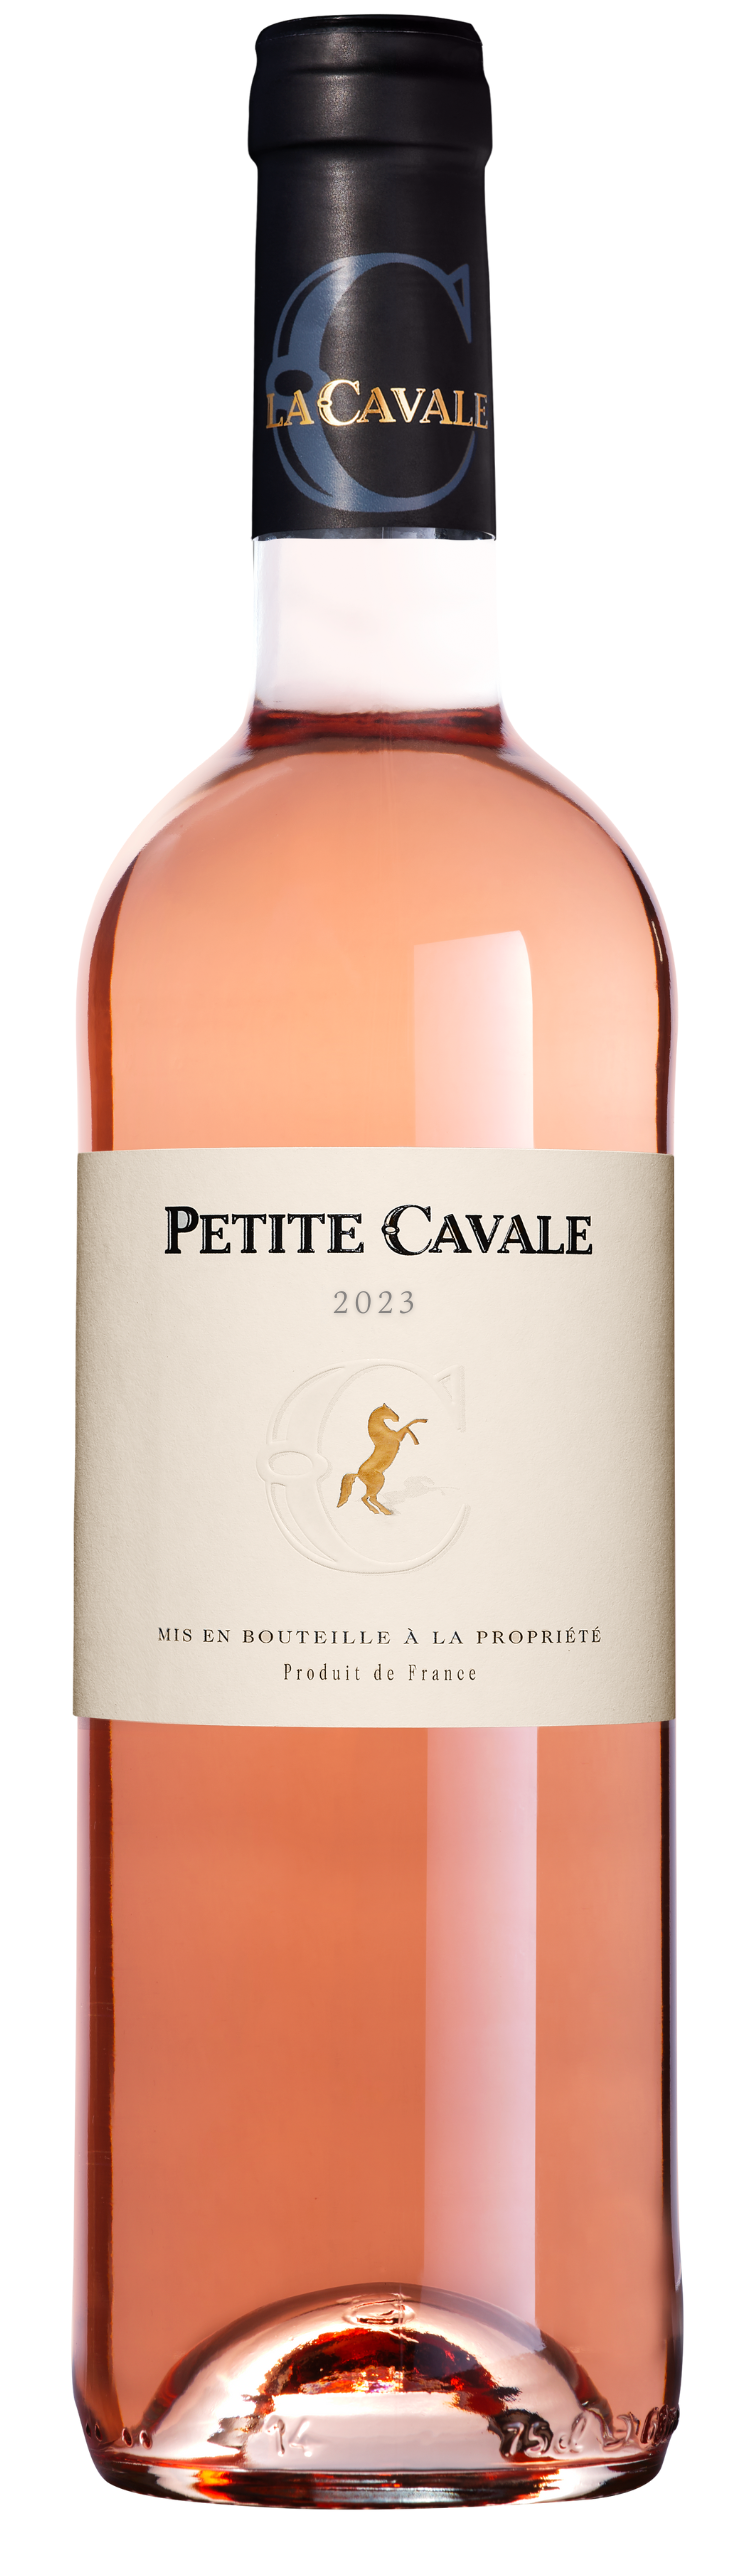 Petite Cavale rosé 2023 - Domaine La Cavale